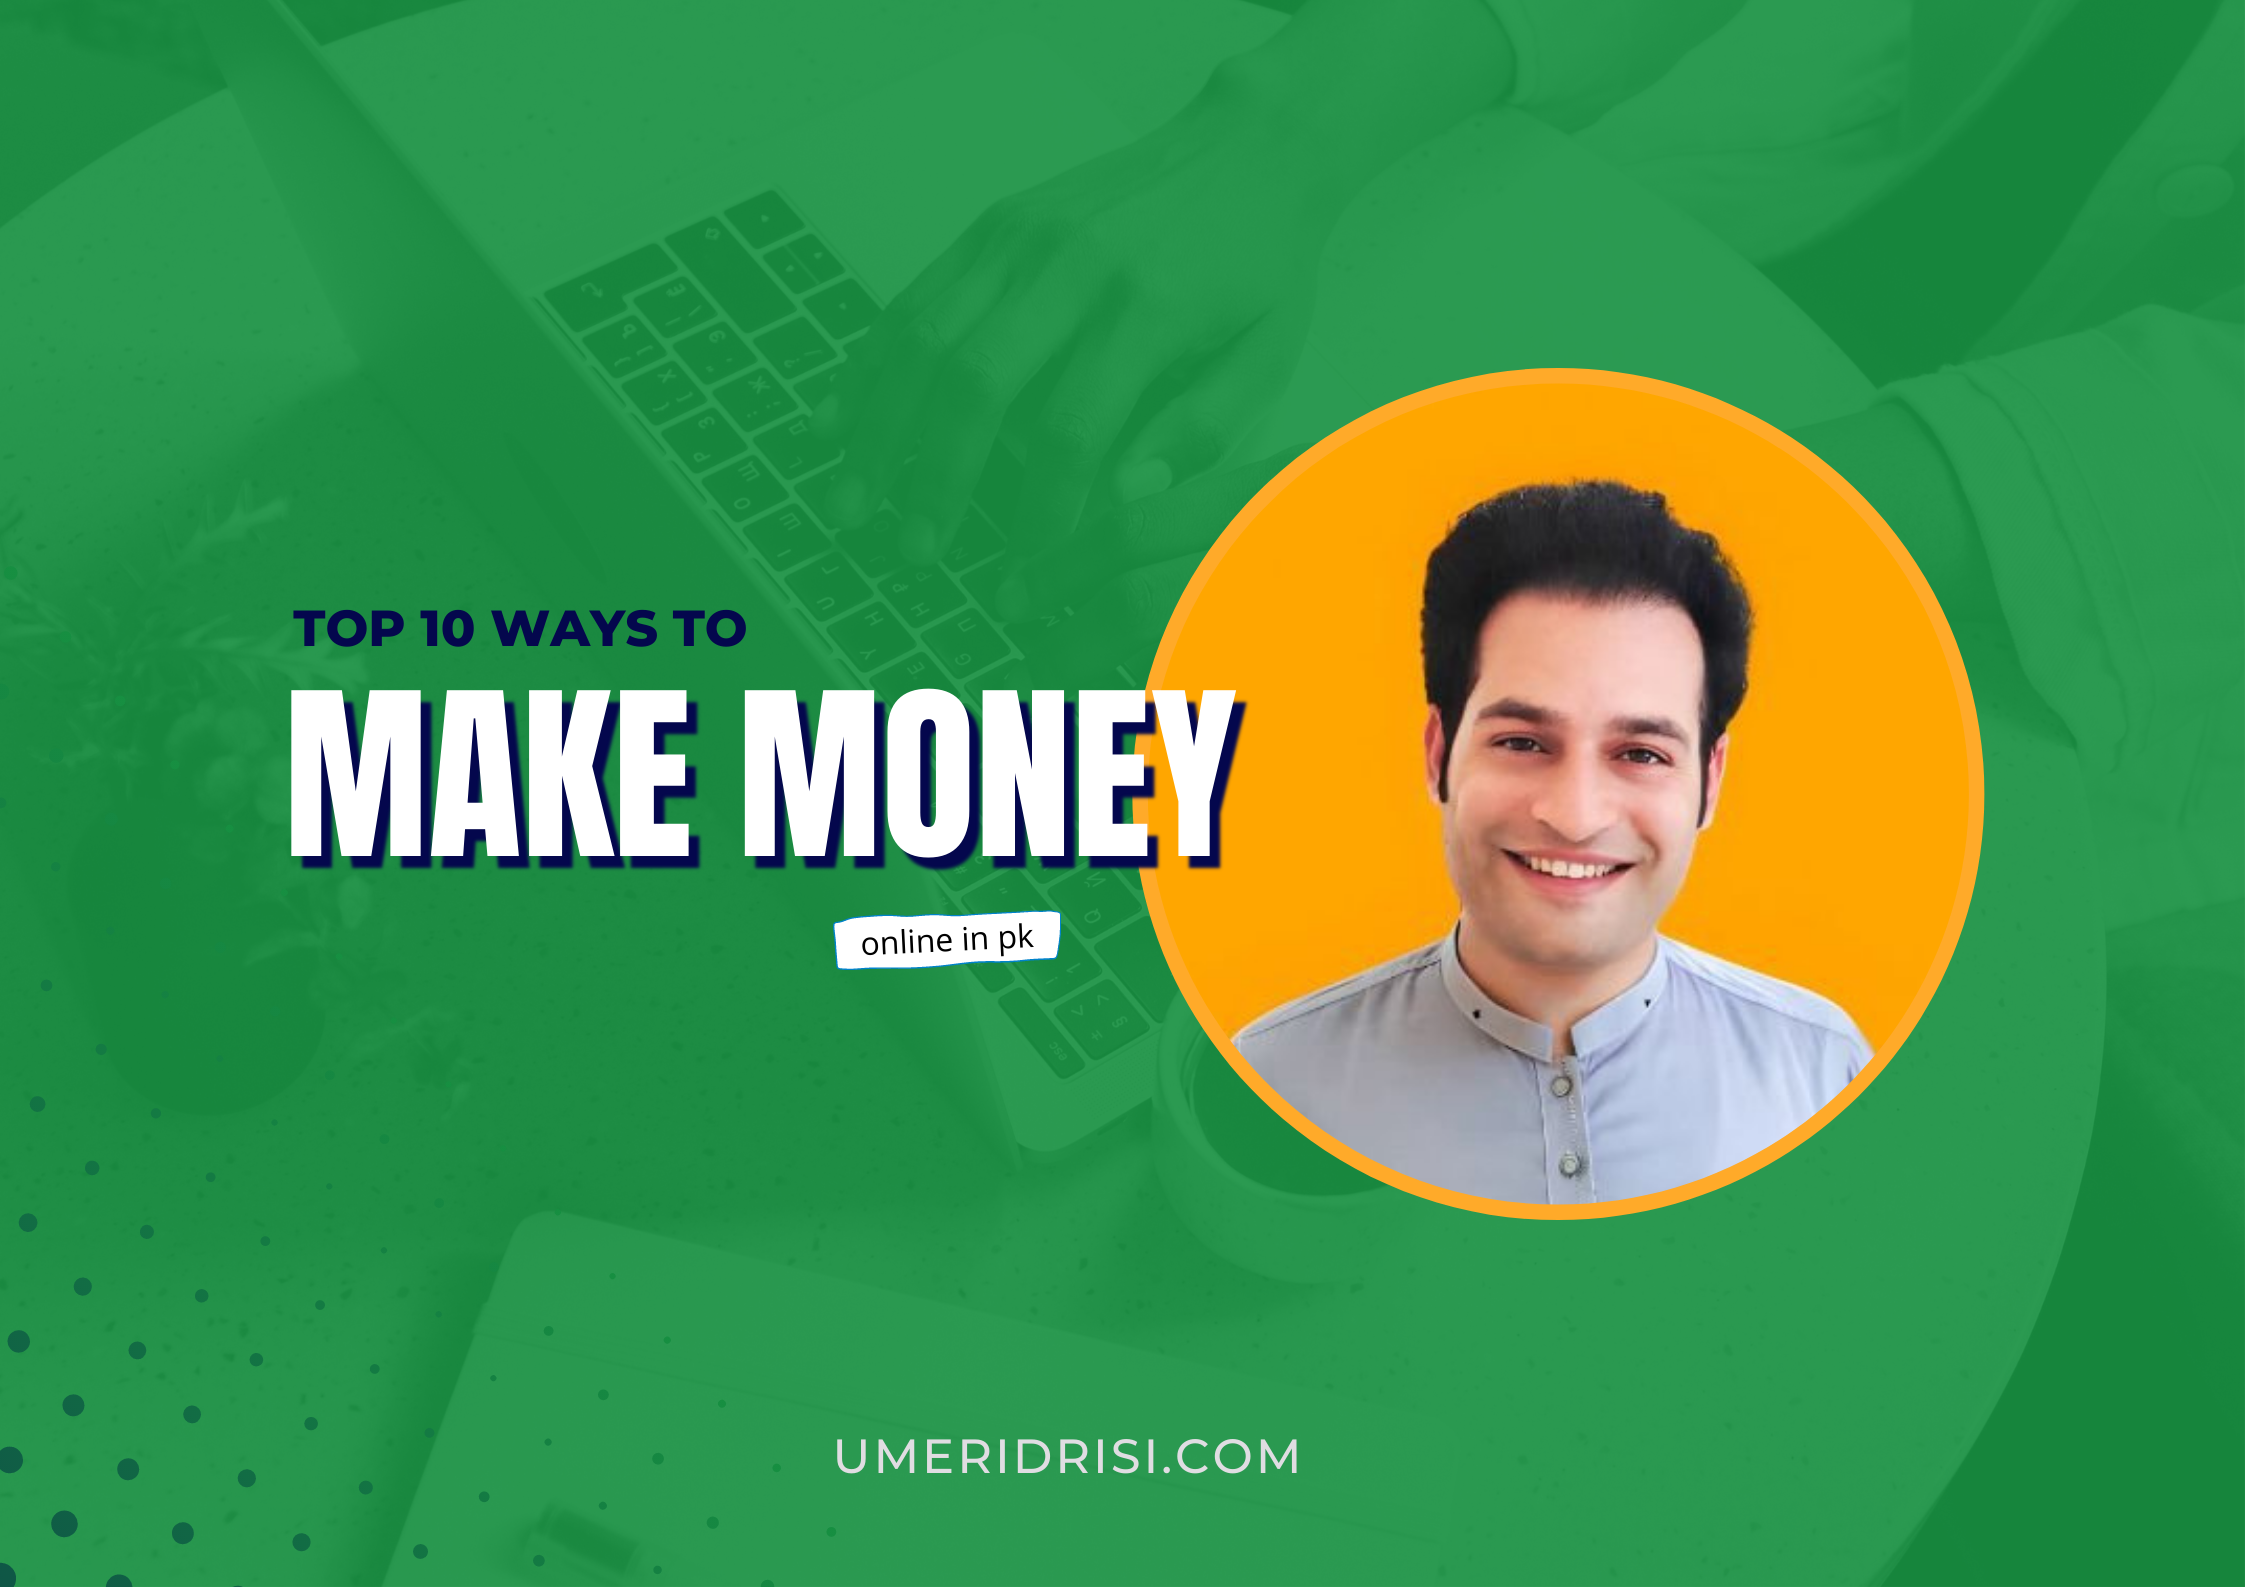 Top 10 Ways to Make Money Online in Pakistan